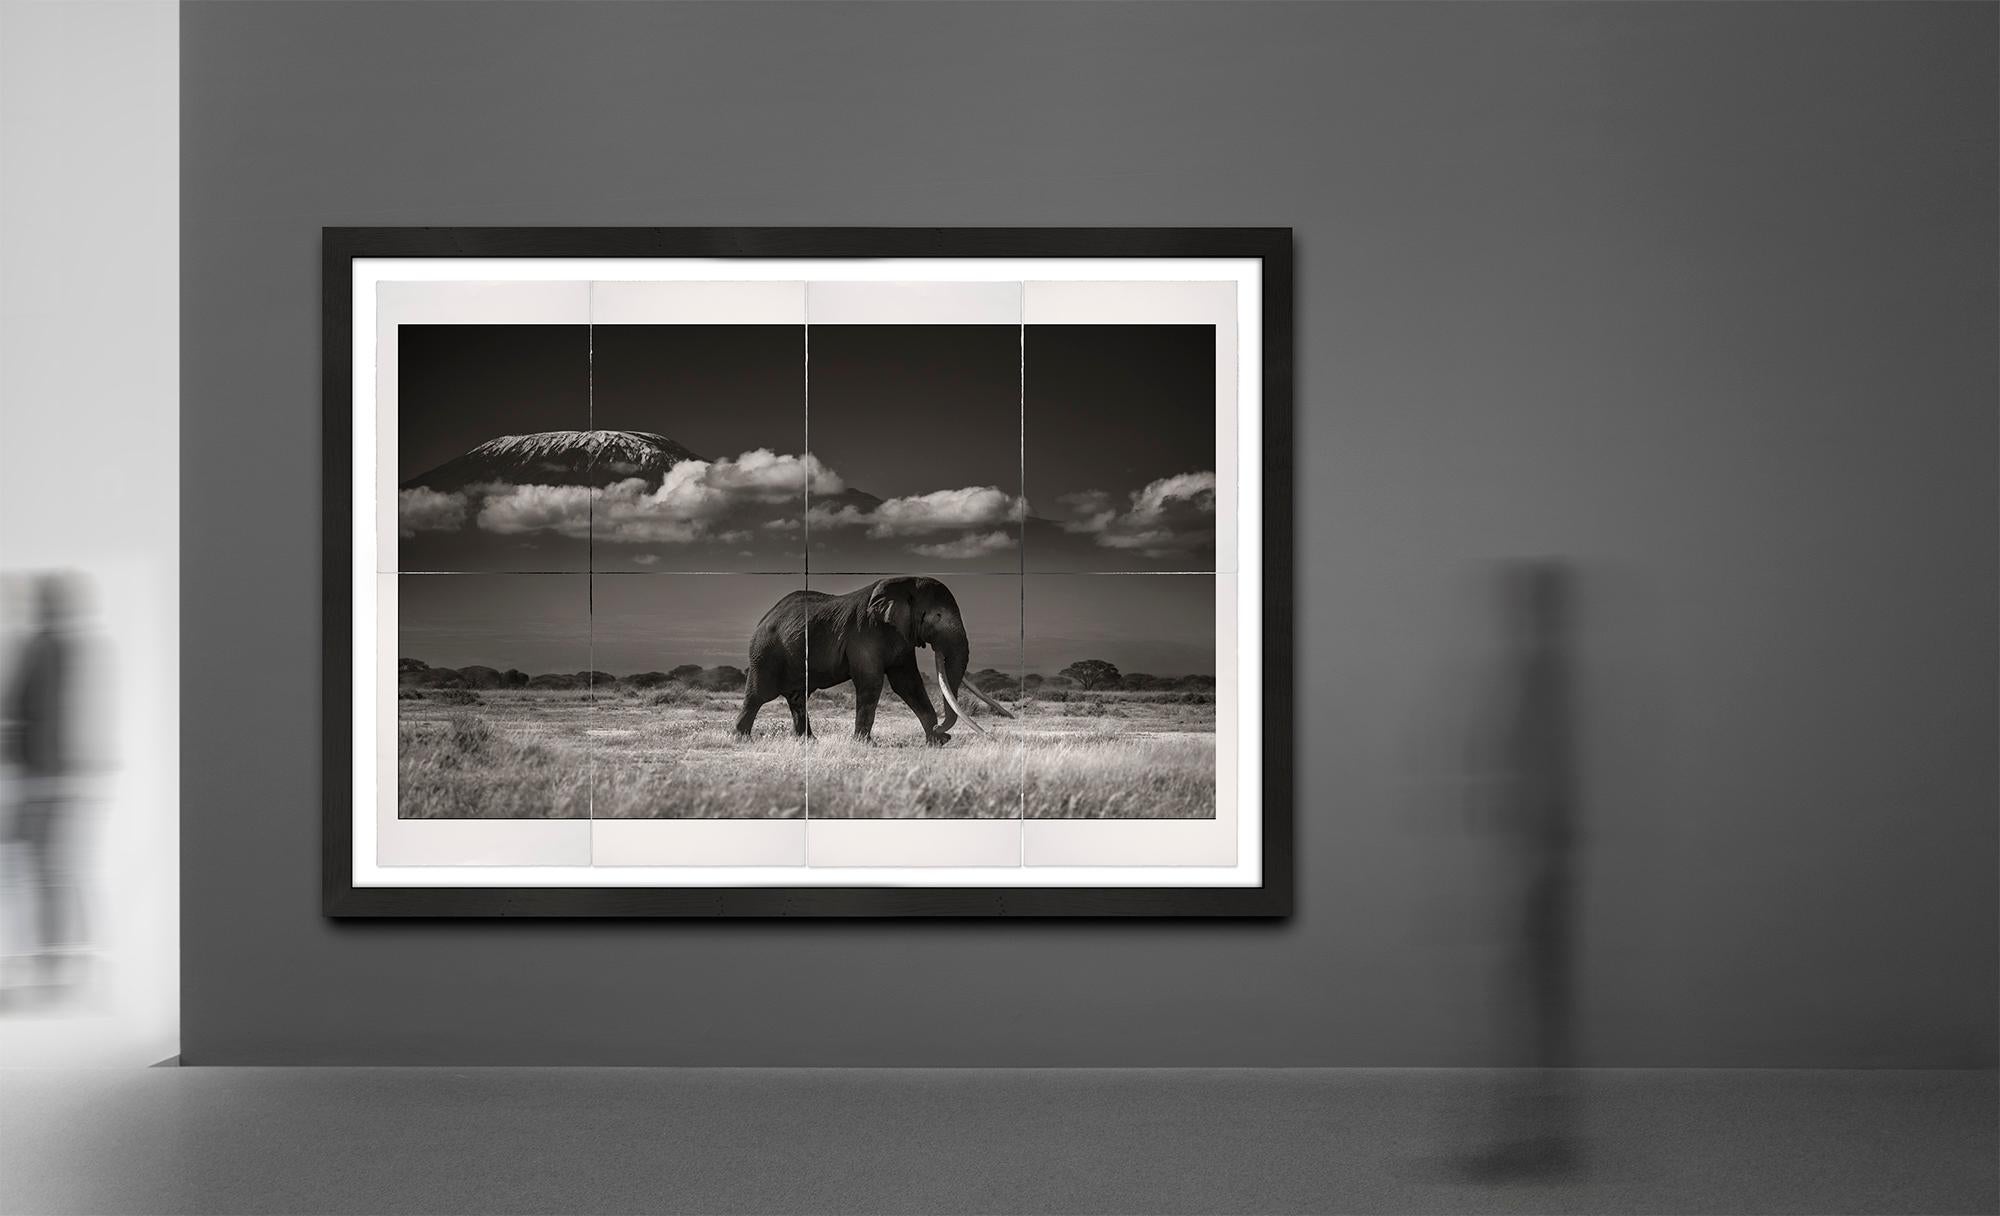 Tim vor Kilimanjaro, Platin, Elefant, Schwarz-Weiß-Fotografie (Zeitgenössisch), Photograph, von Joachim Schmeisser